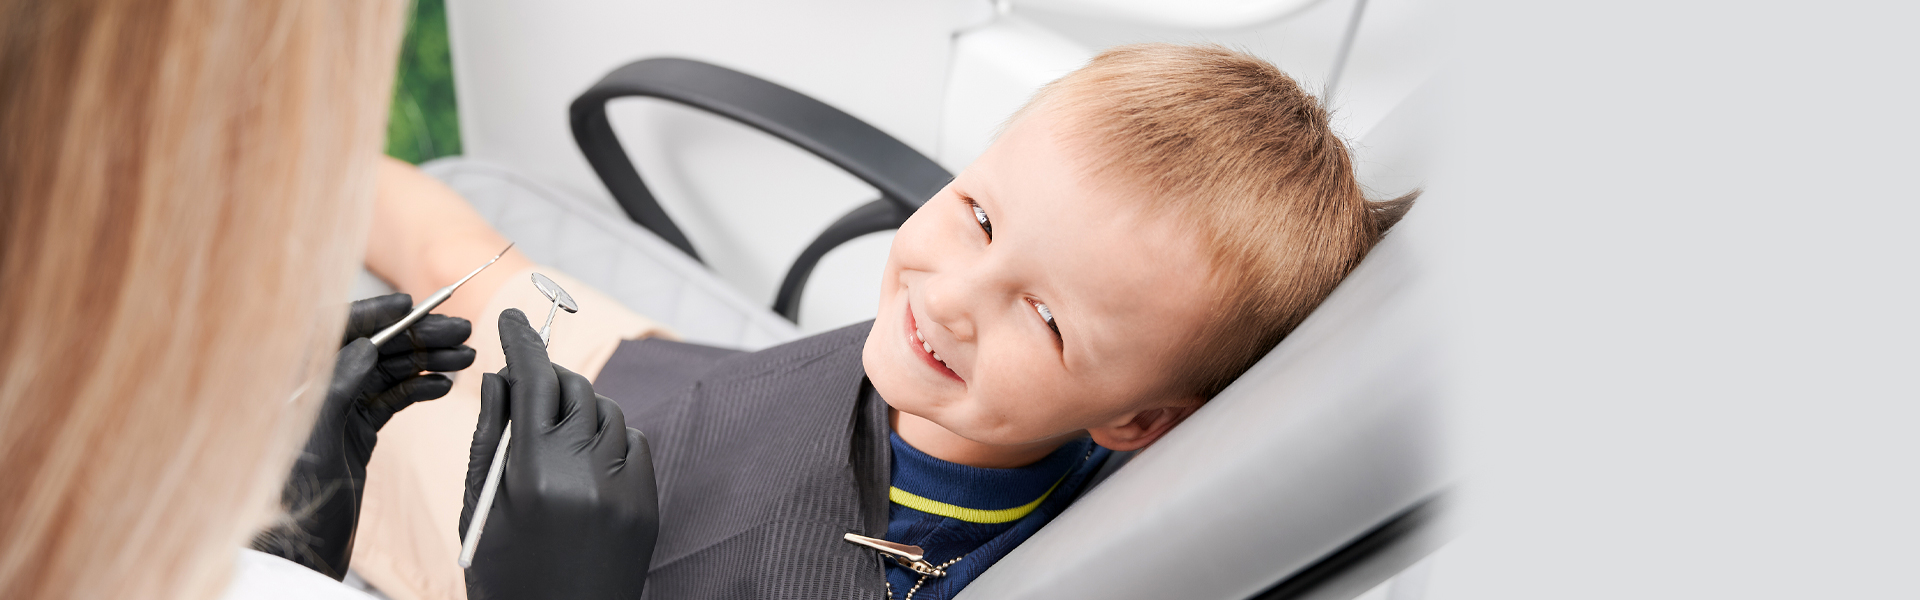 Top 6 Procedures Performed in Children’s Dentistry